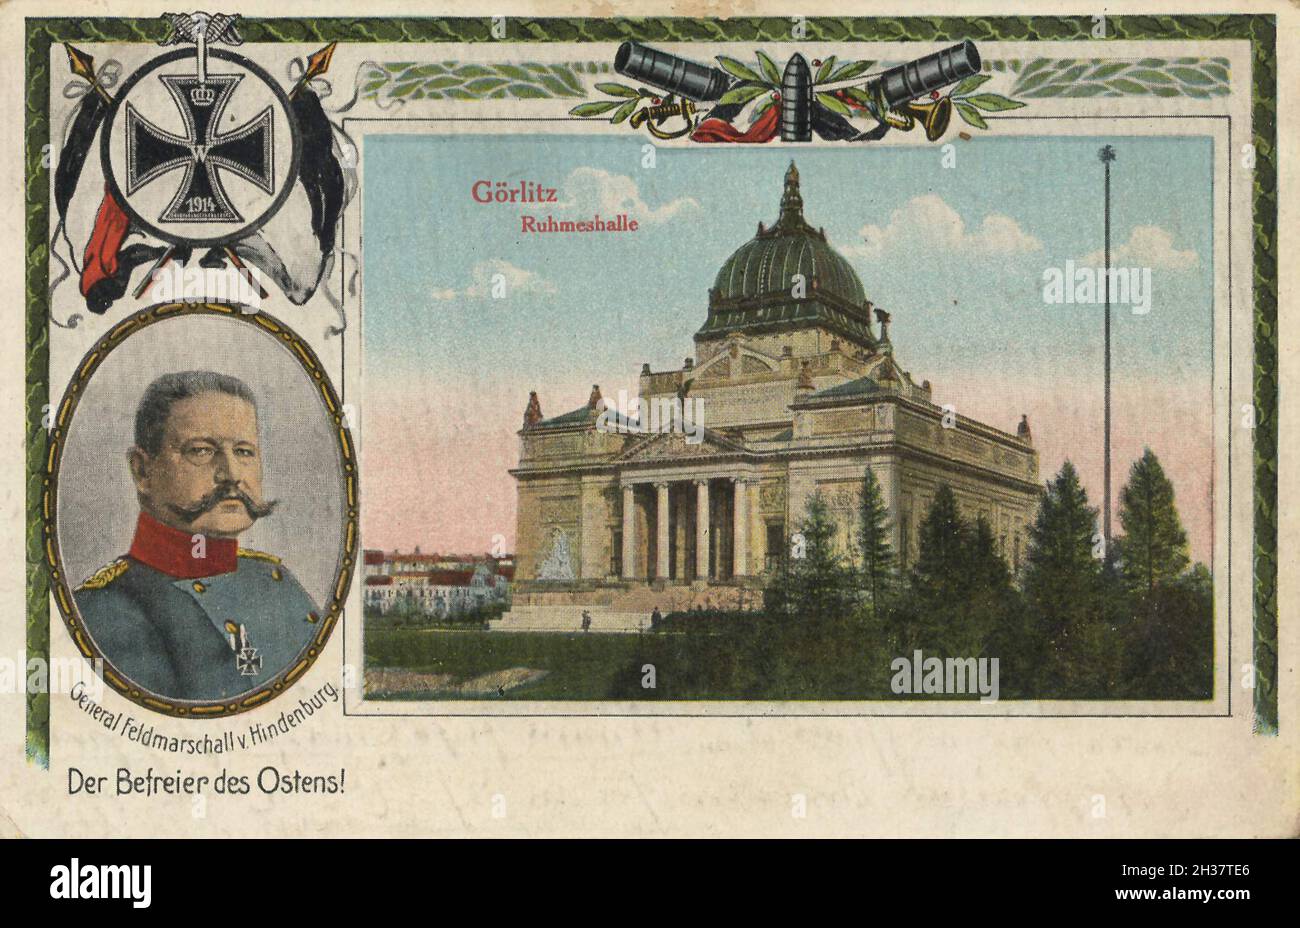 Ruhmeshalle von Görlitz mit Gerneral Feldmarschall von Hindenburg, Sachsen, Deutschland, Ansicht von ca 1910, digitale Reproduktion einer gemeinfreien Postkarte Stock Photo